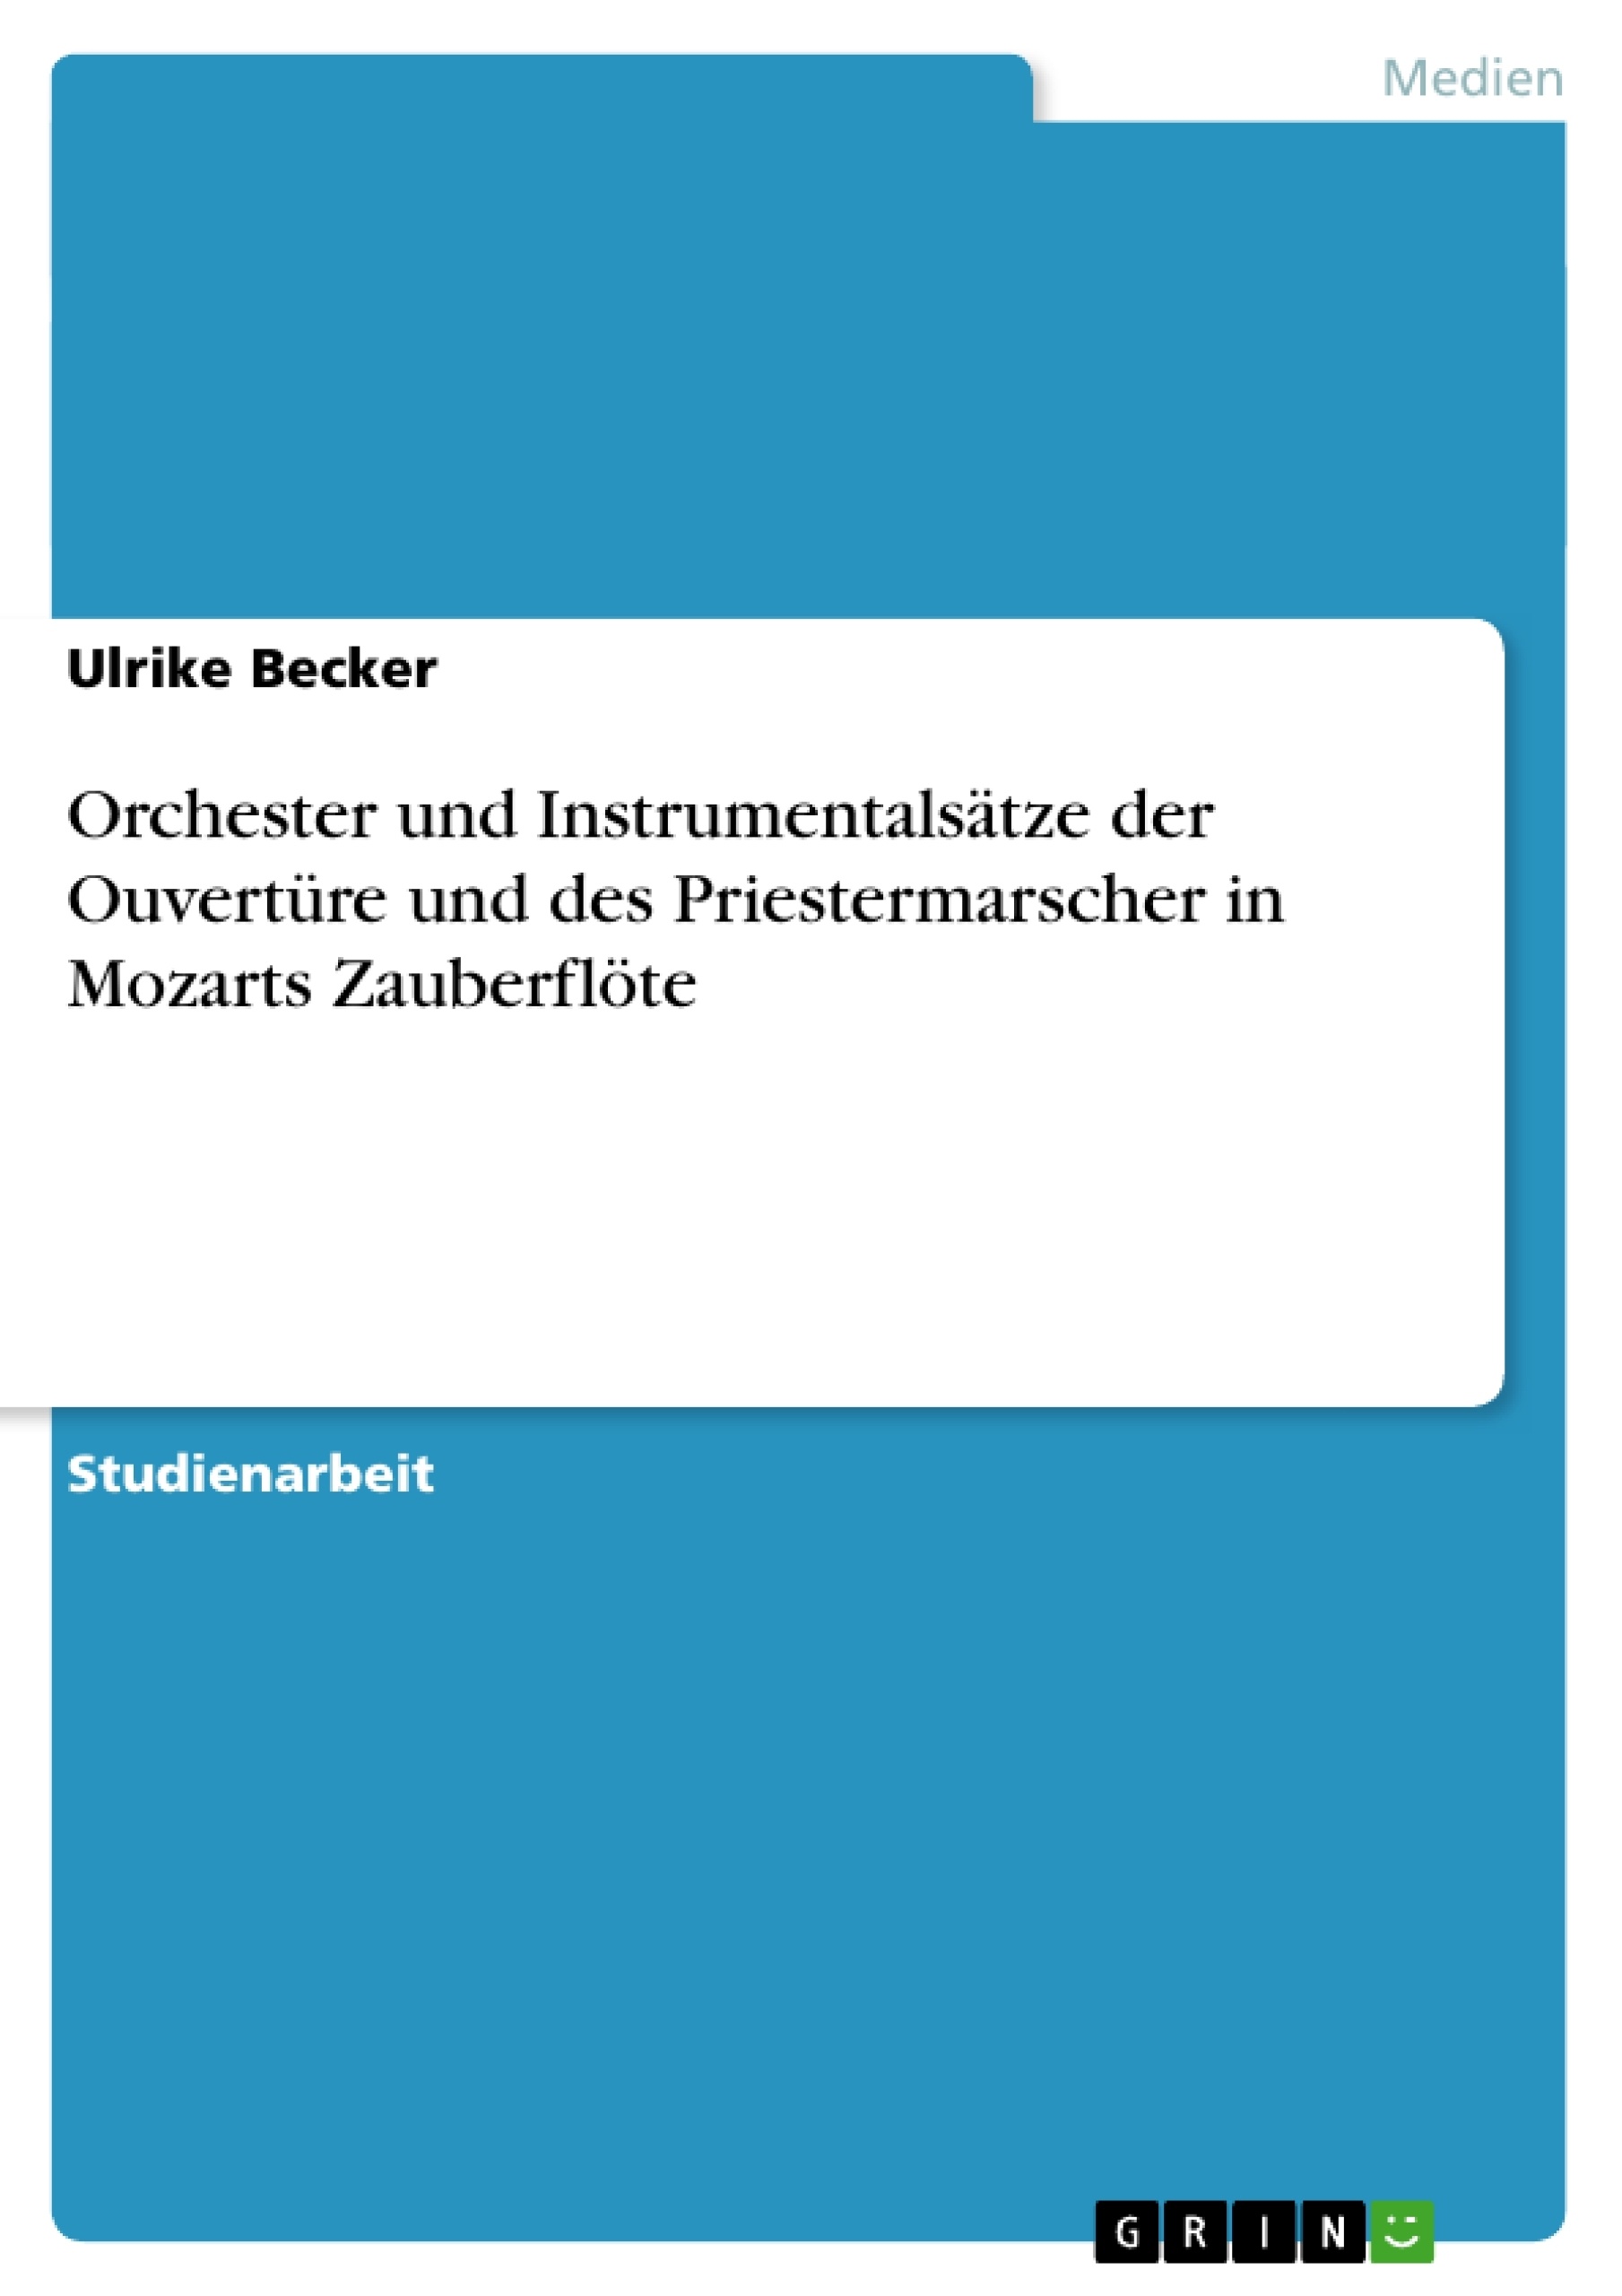 Title: Orchester und Instrumentalsätze der Ouvertüre und des Priestermarscher in Mozarts Zauberflöte